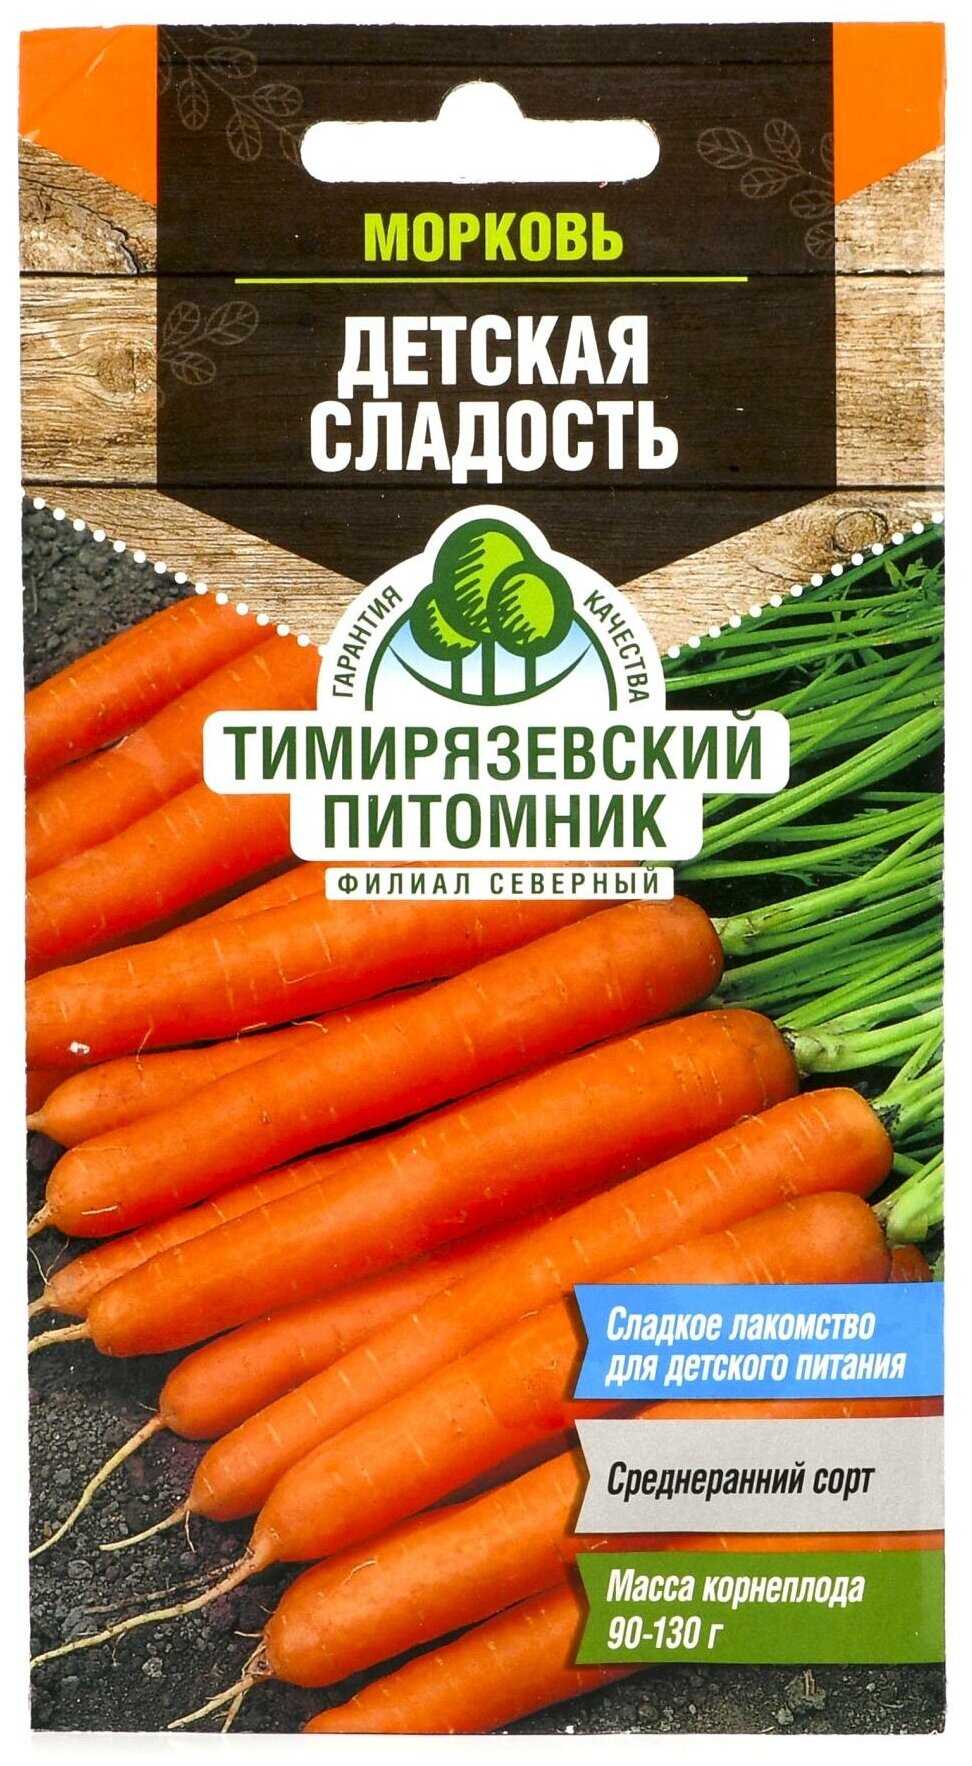 Семена Тимирязевский питомник Морковь Детская сладость 2 г